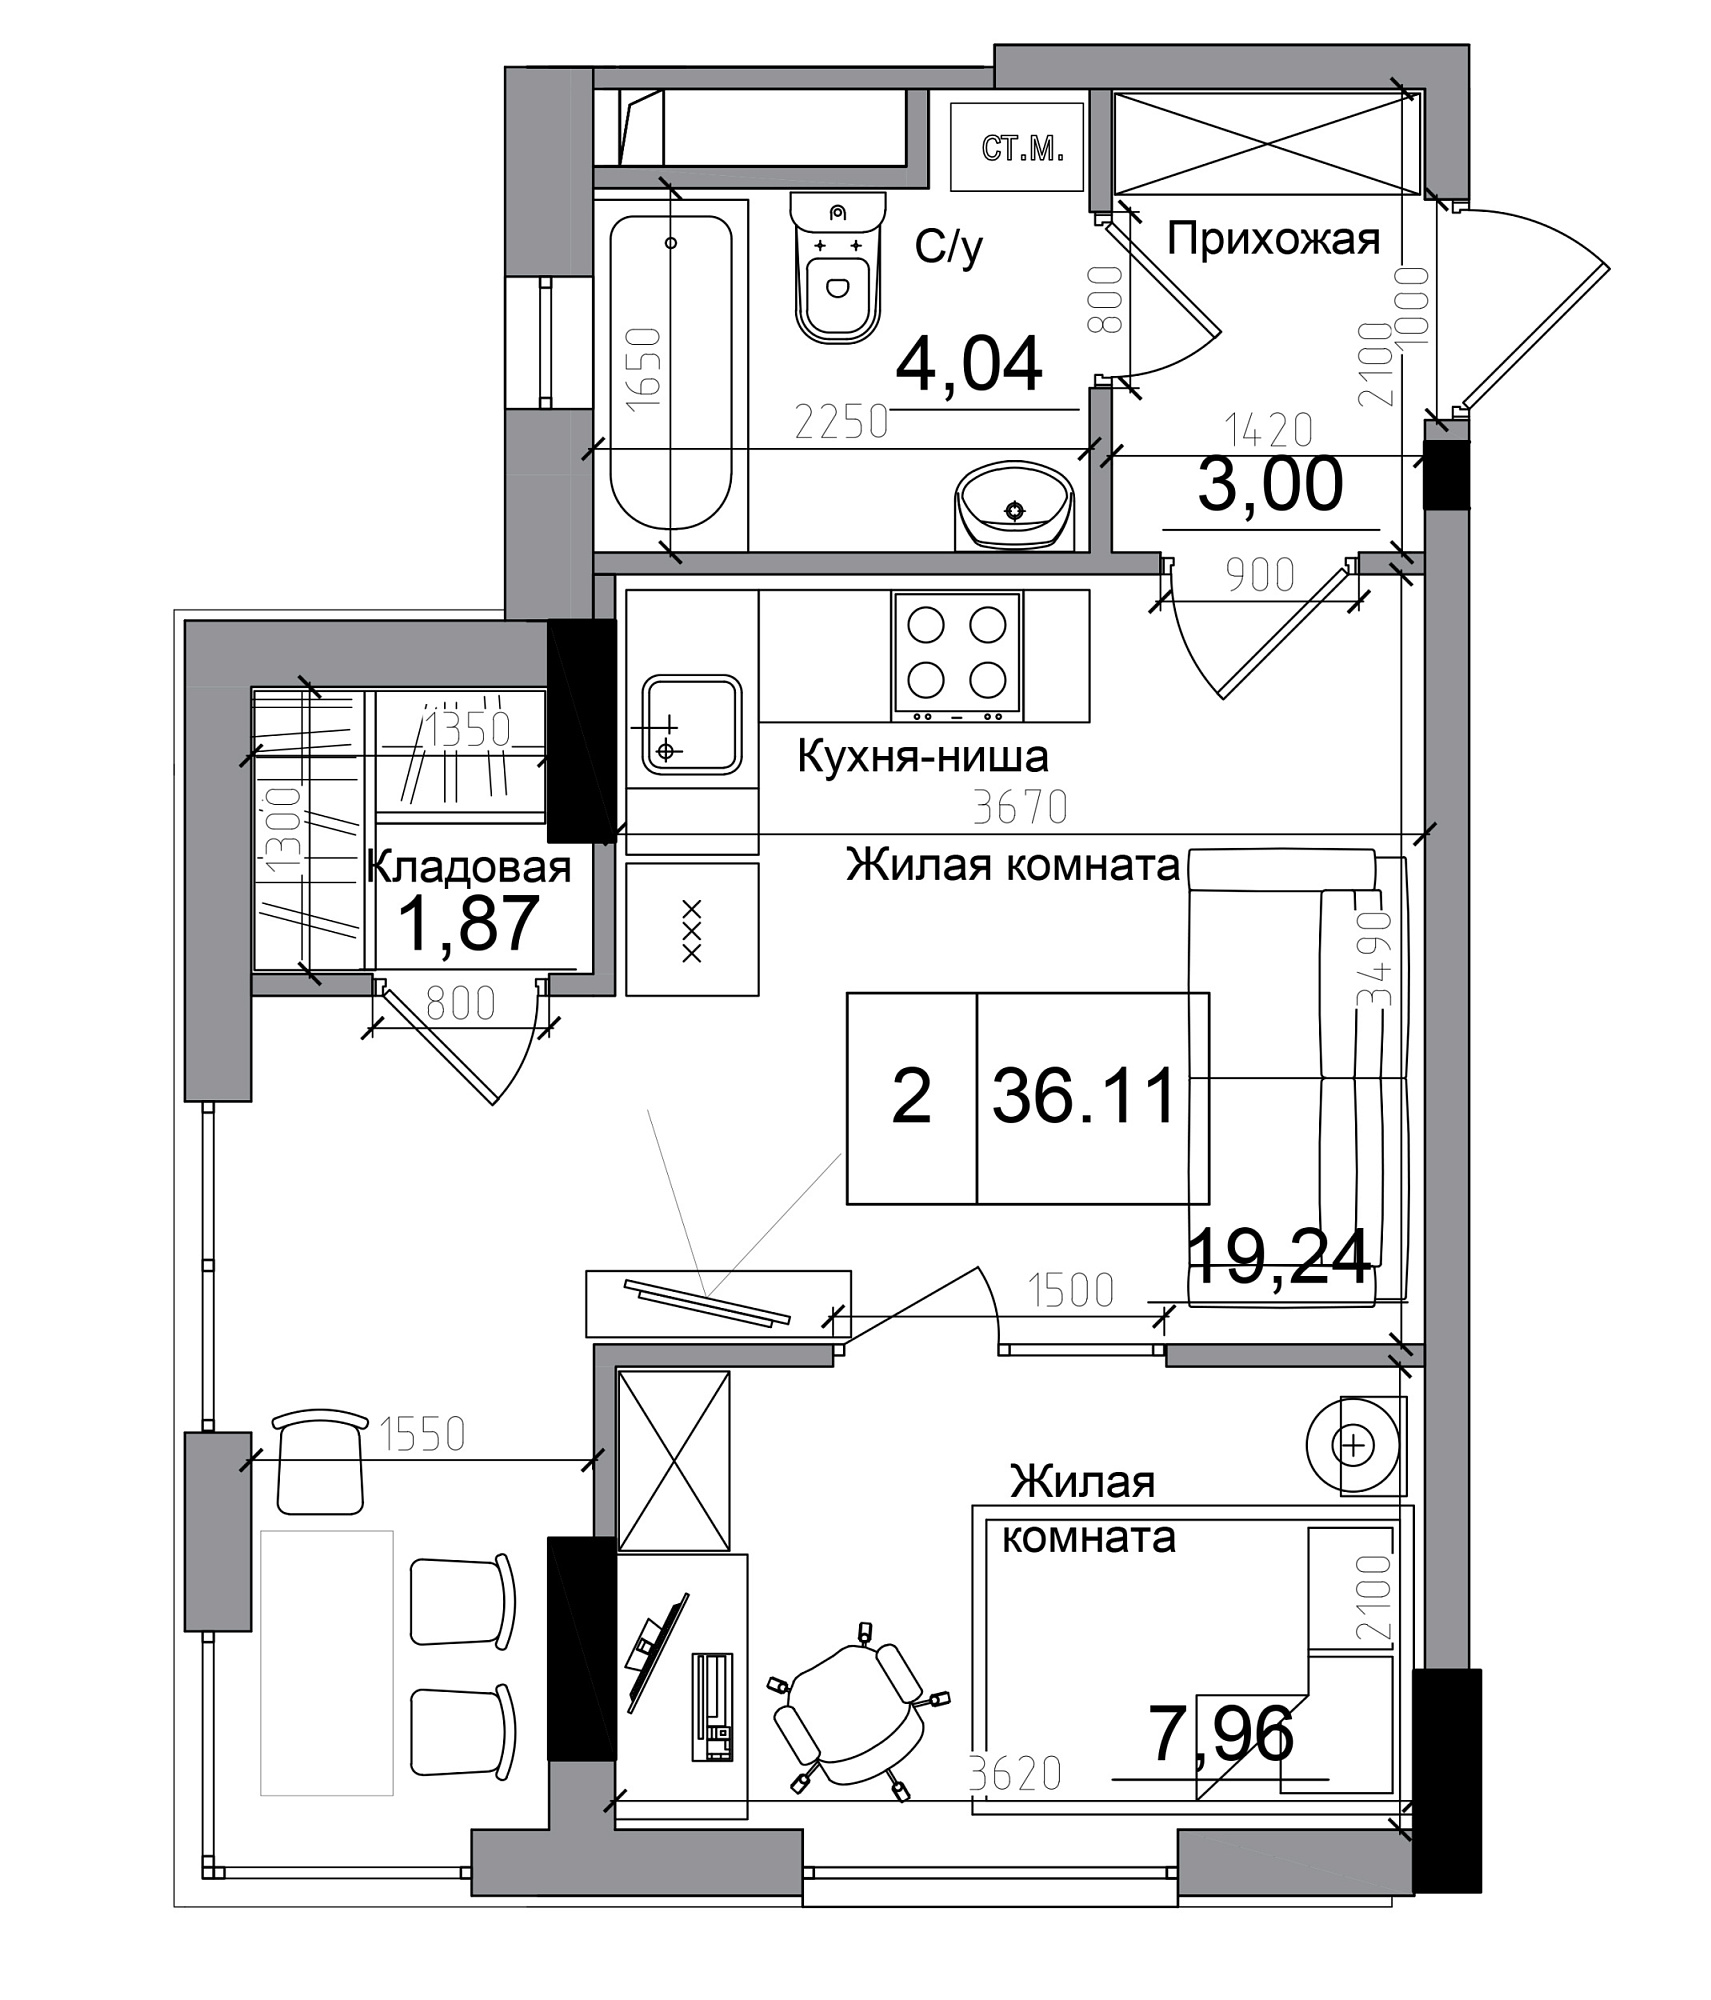 Планировка 1-к квартира площей 36.11м2, AB-11-11/00004.